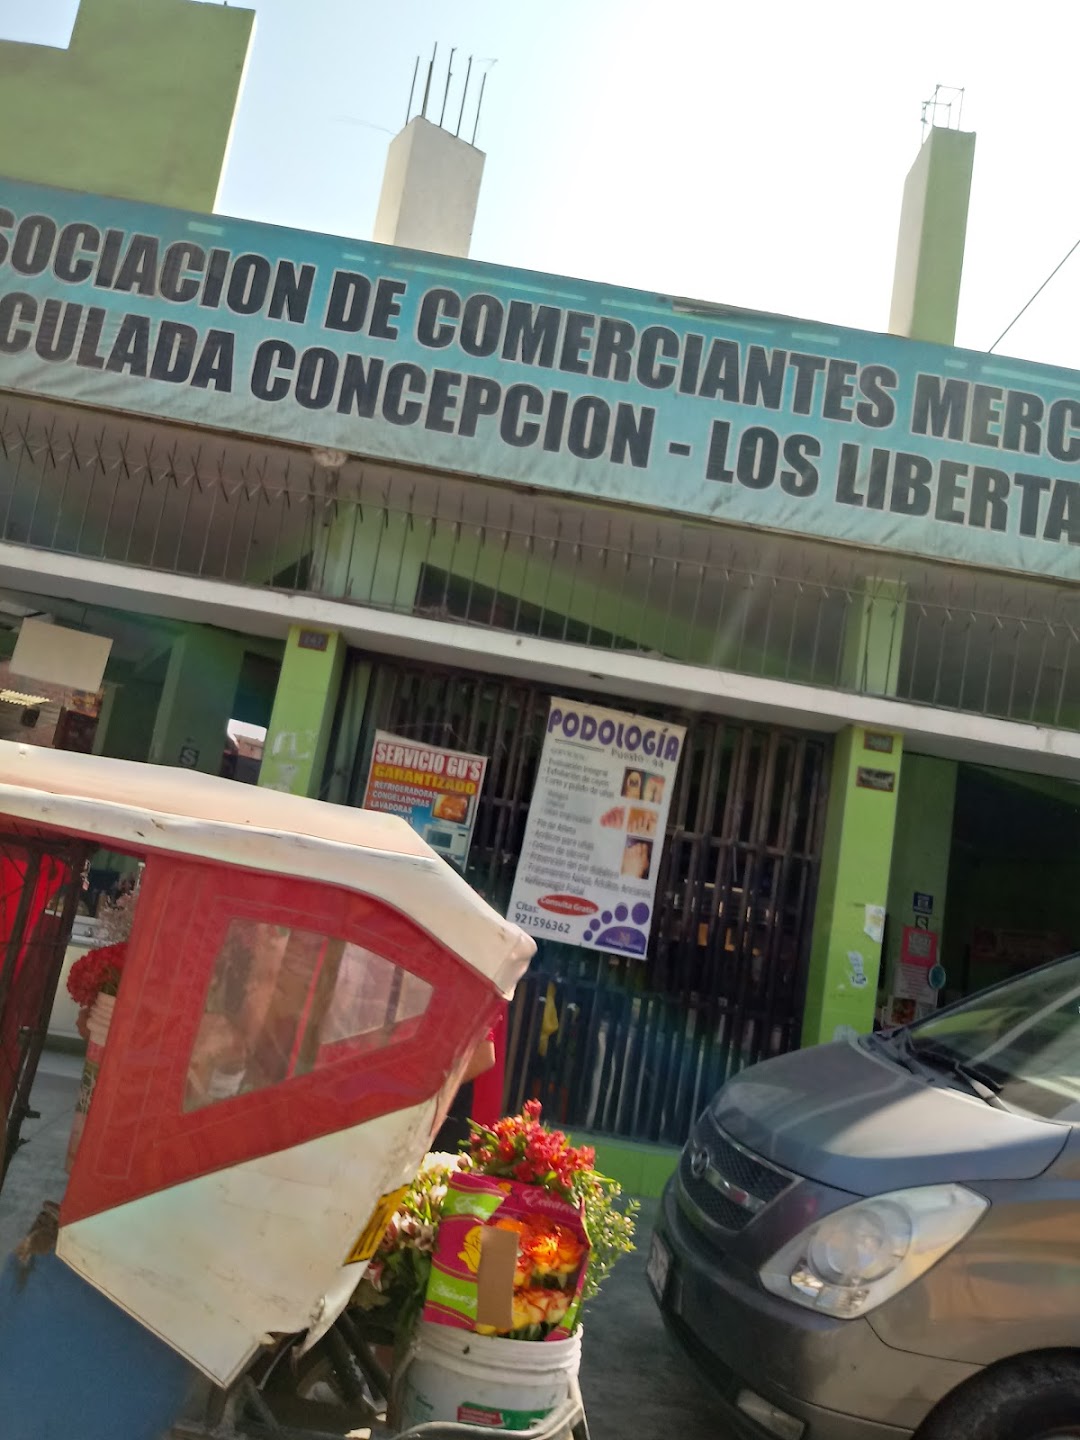 Asociacion De Comerciantes Mercado Concepcion - Los Libertadores